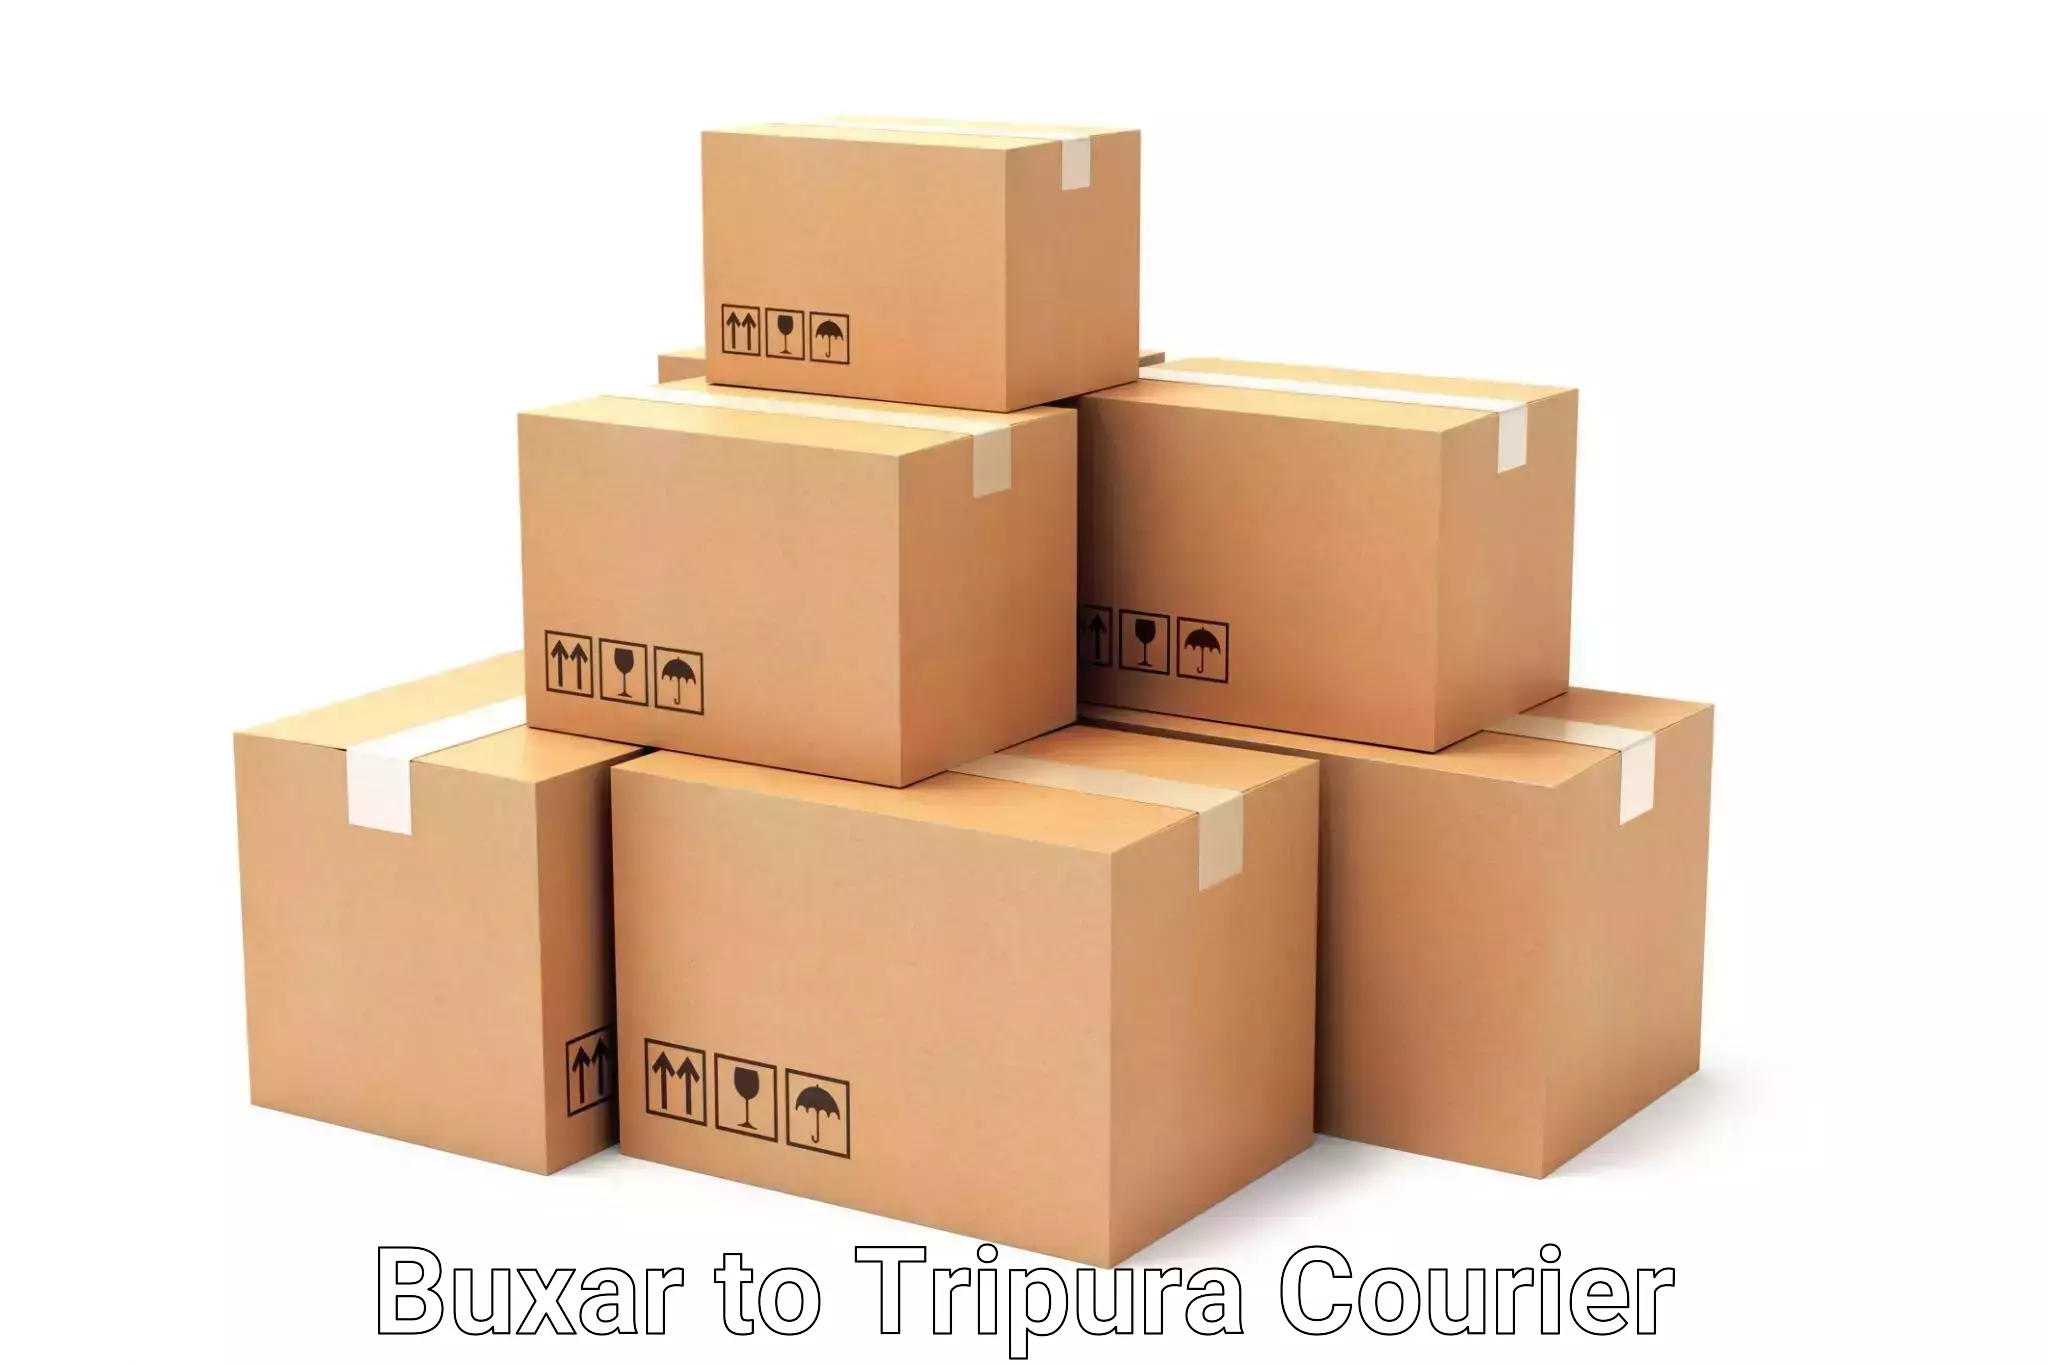 Luggage delivery optimization Buxar to IIIT Agartala